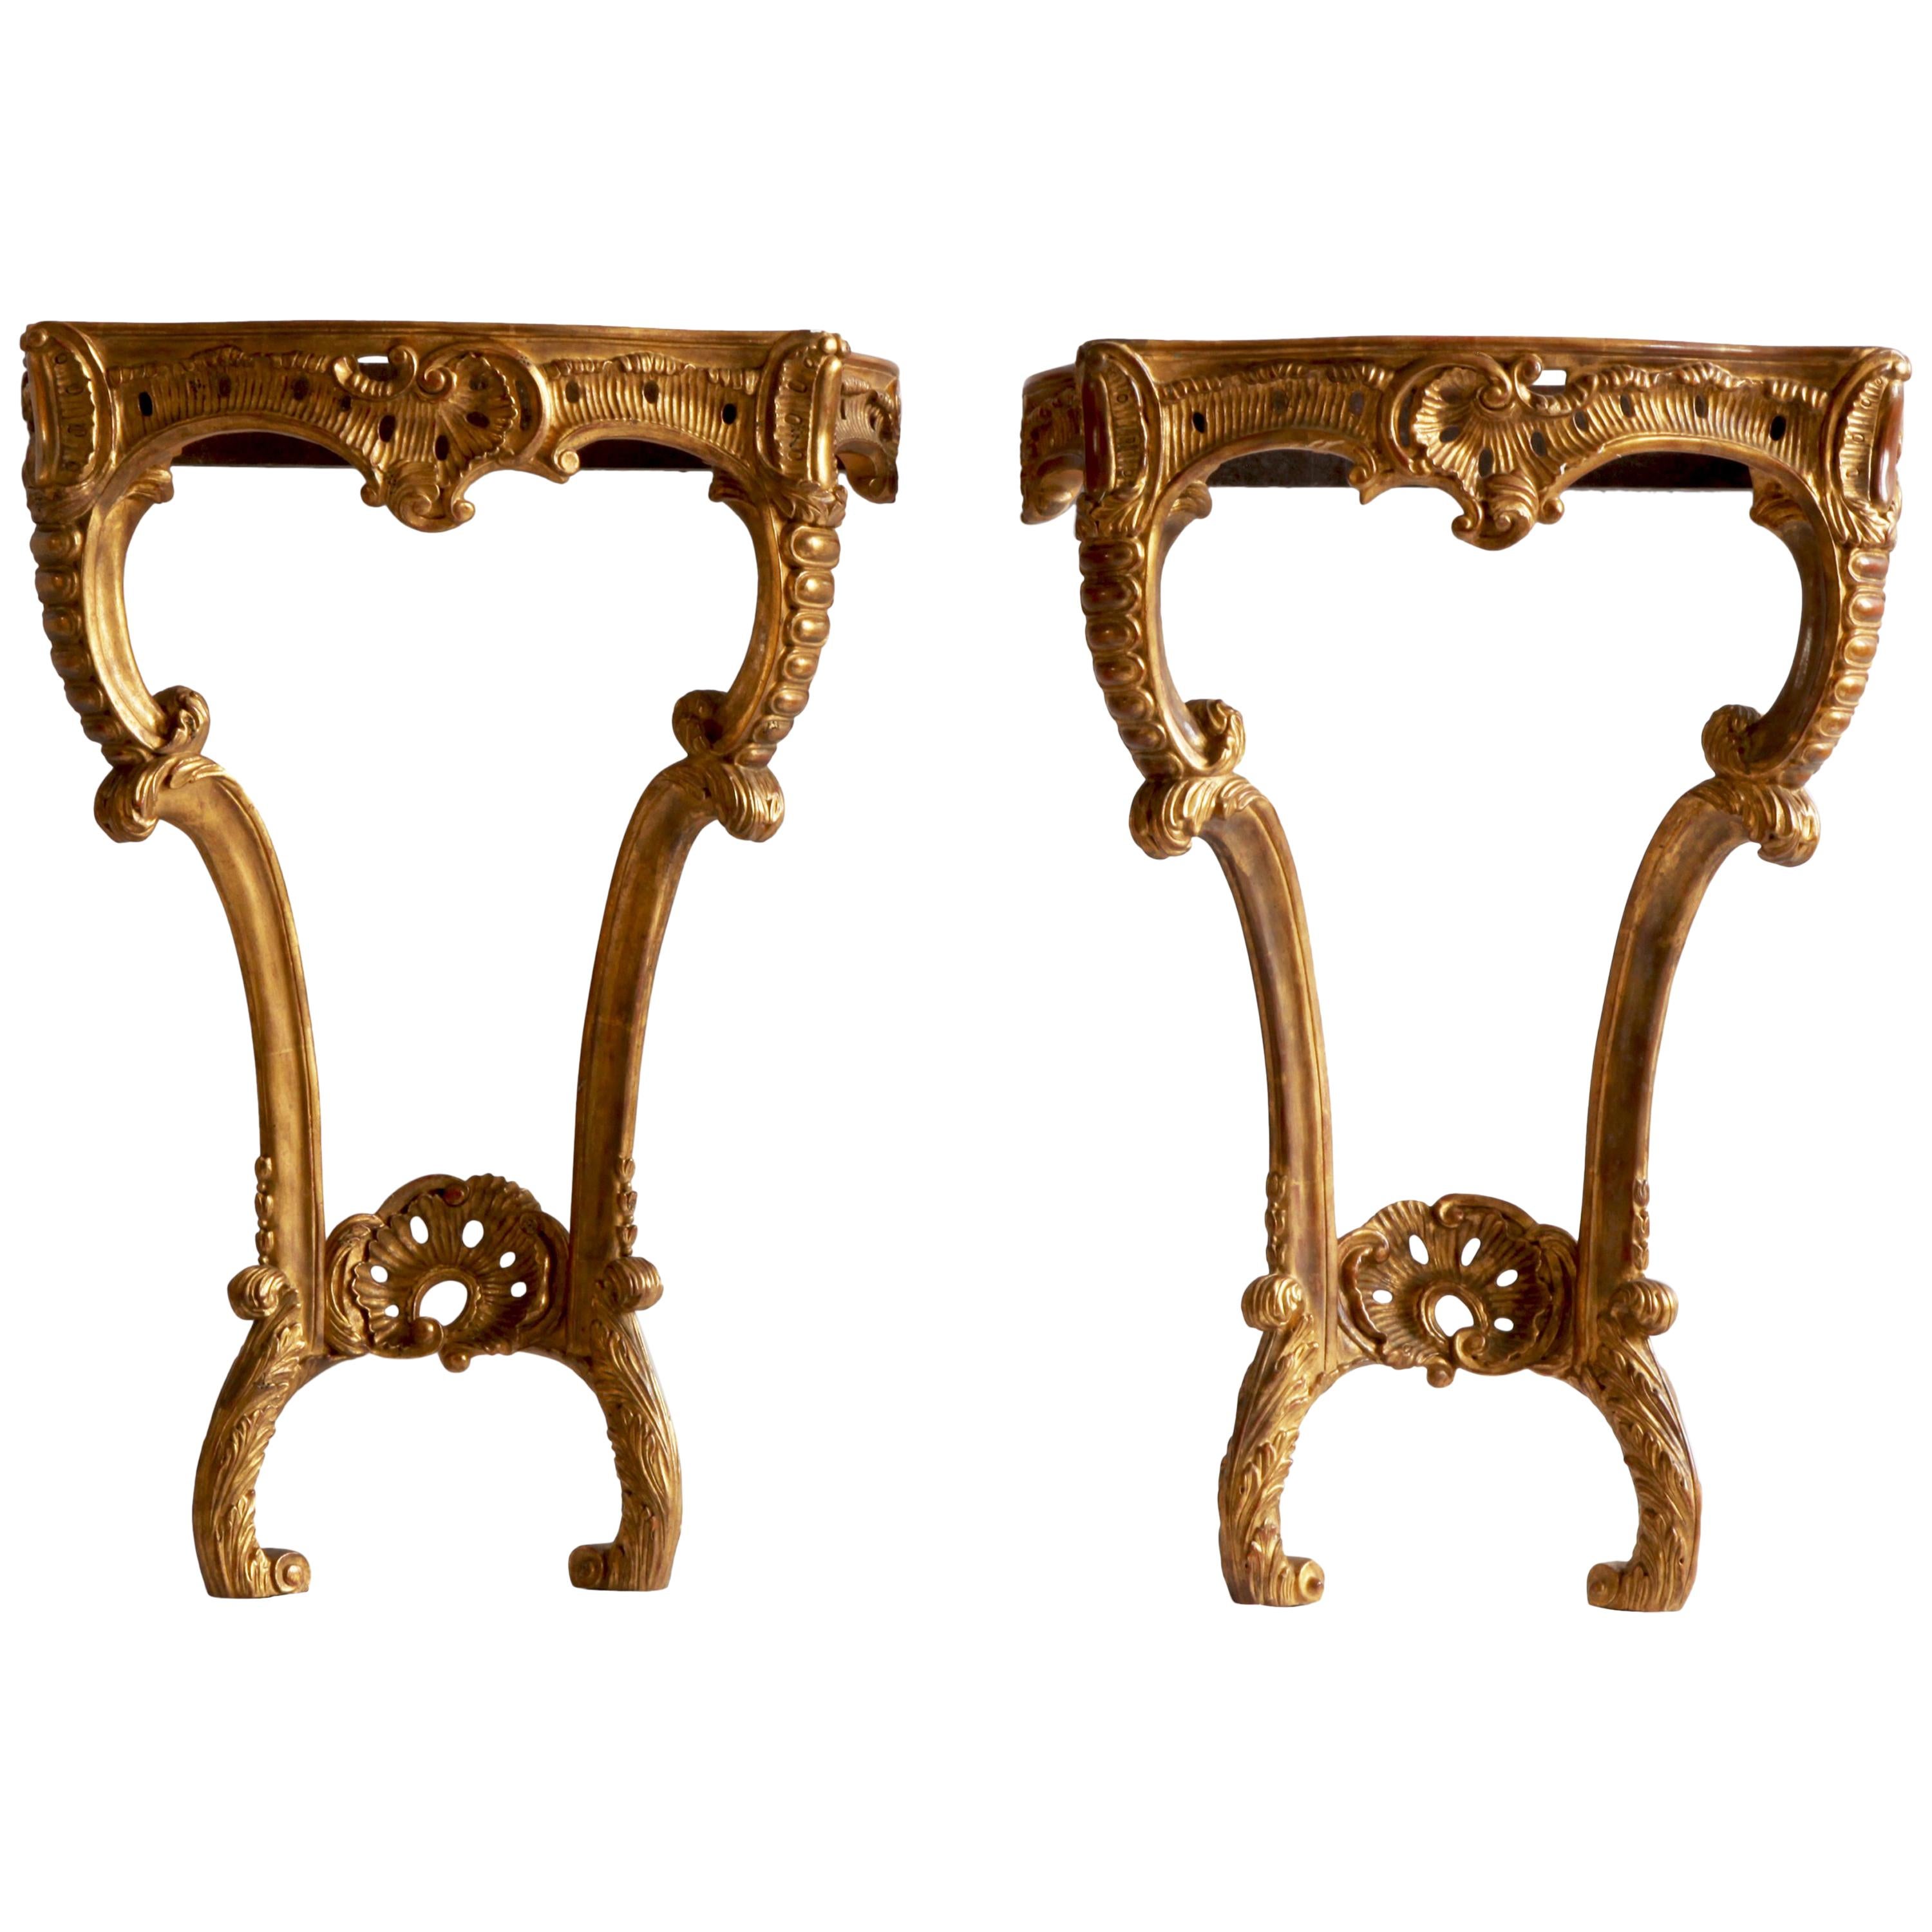 Paire de consoles de style rococo sculptées à la main en bois doré, fabriquées par La Maison London en vente